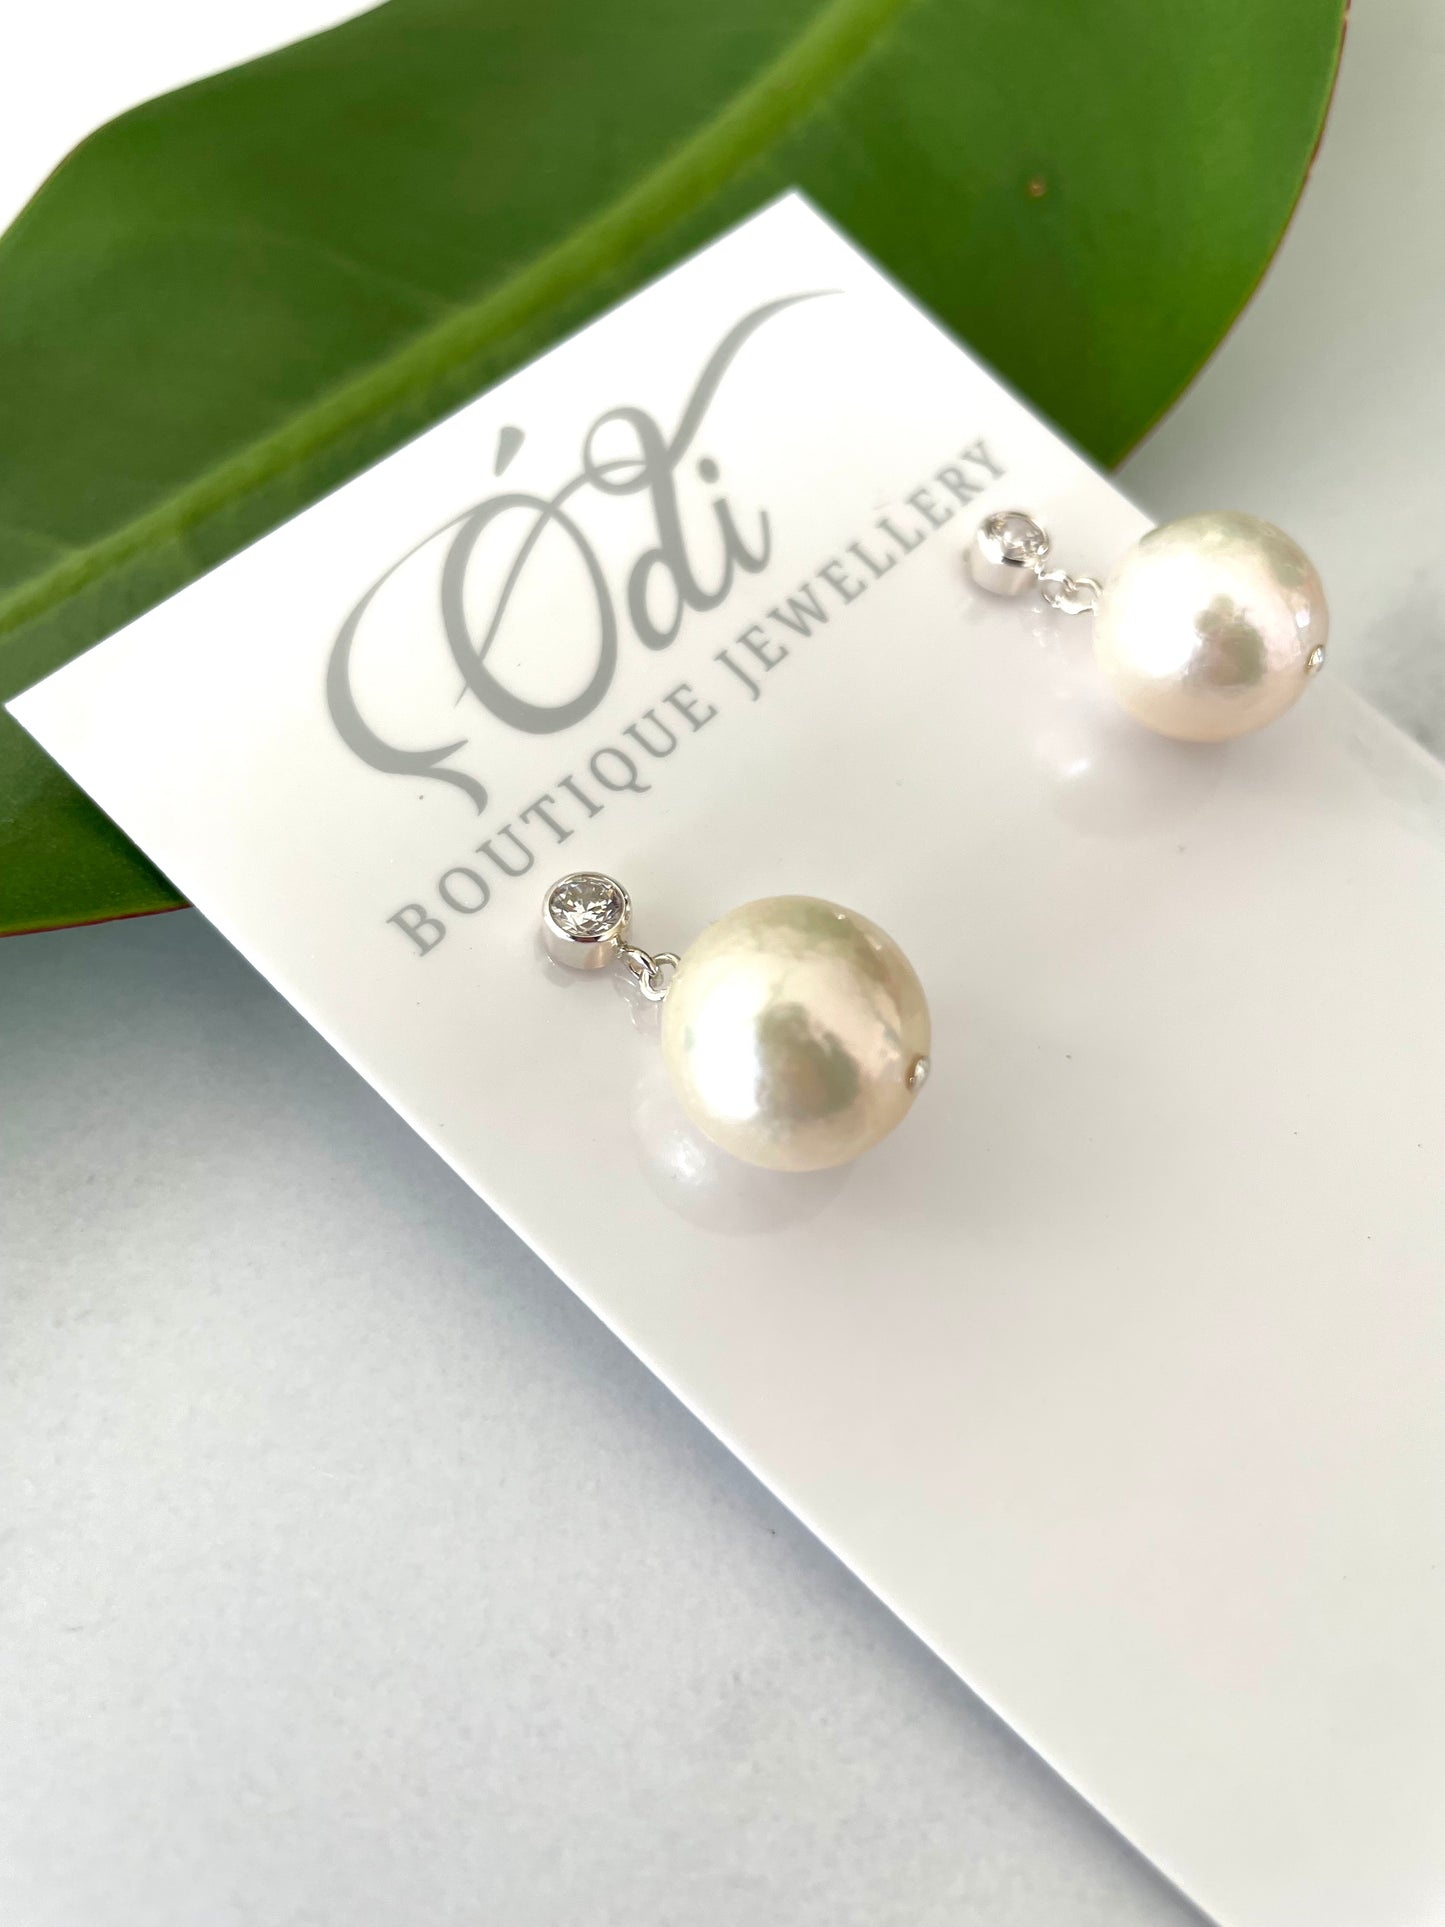 PRE ORDER ETA 2 WEEKS - CZ-Sterling Silver Large Pearl Stud Earrings